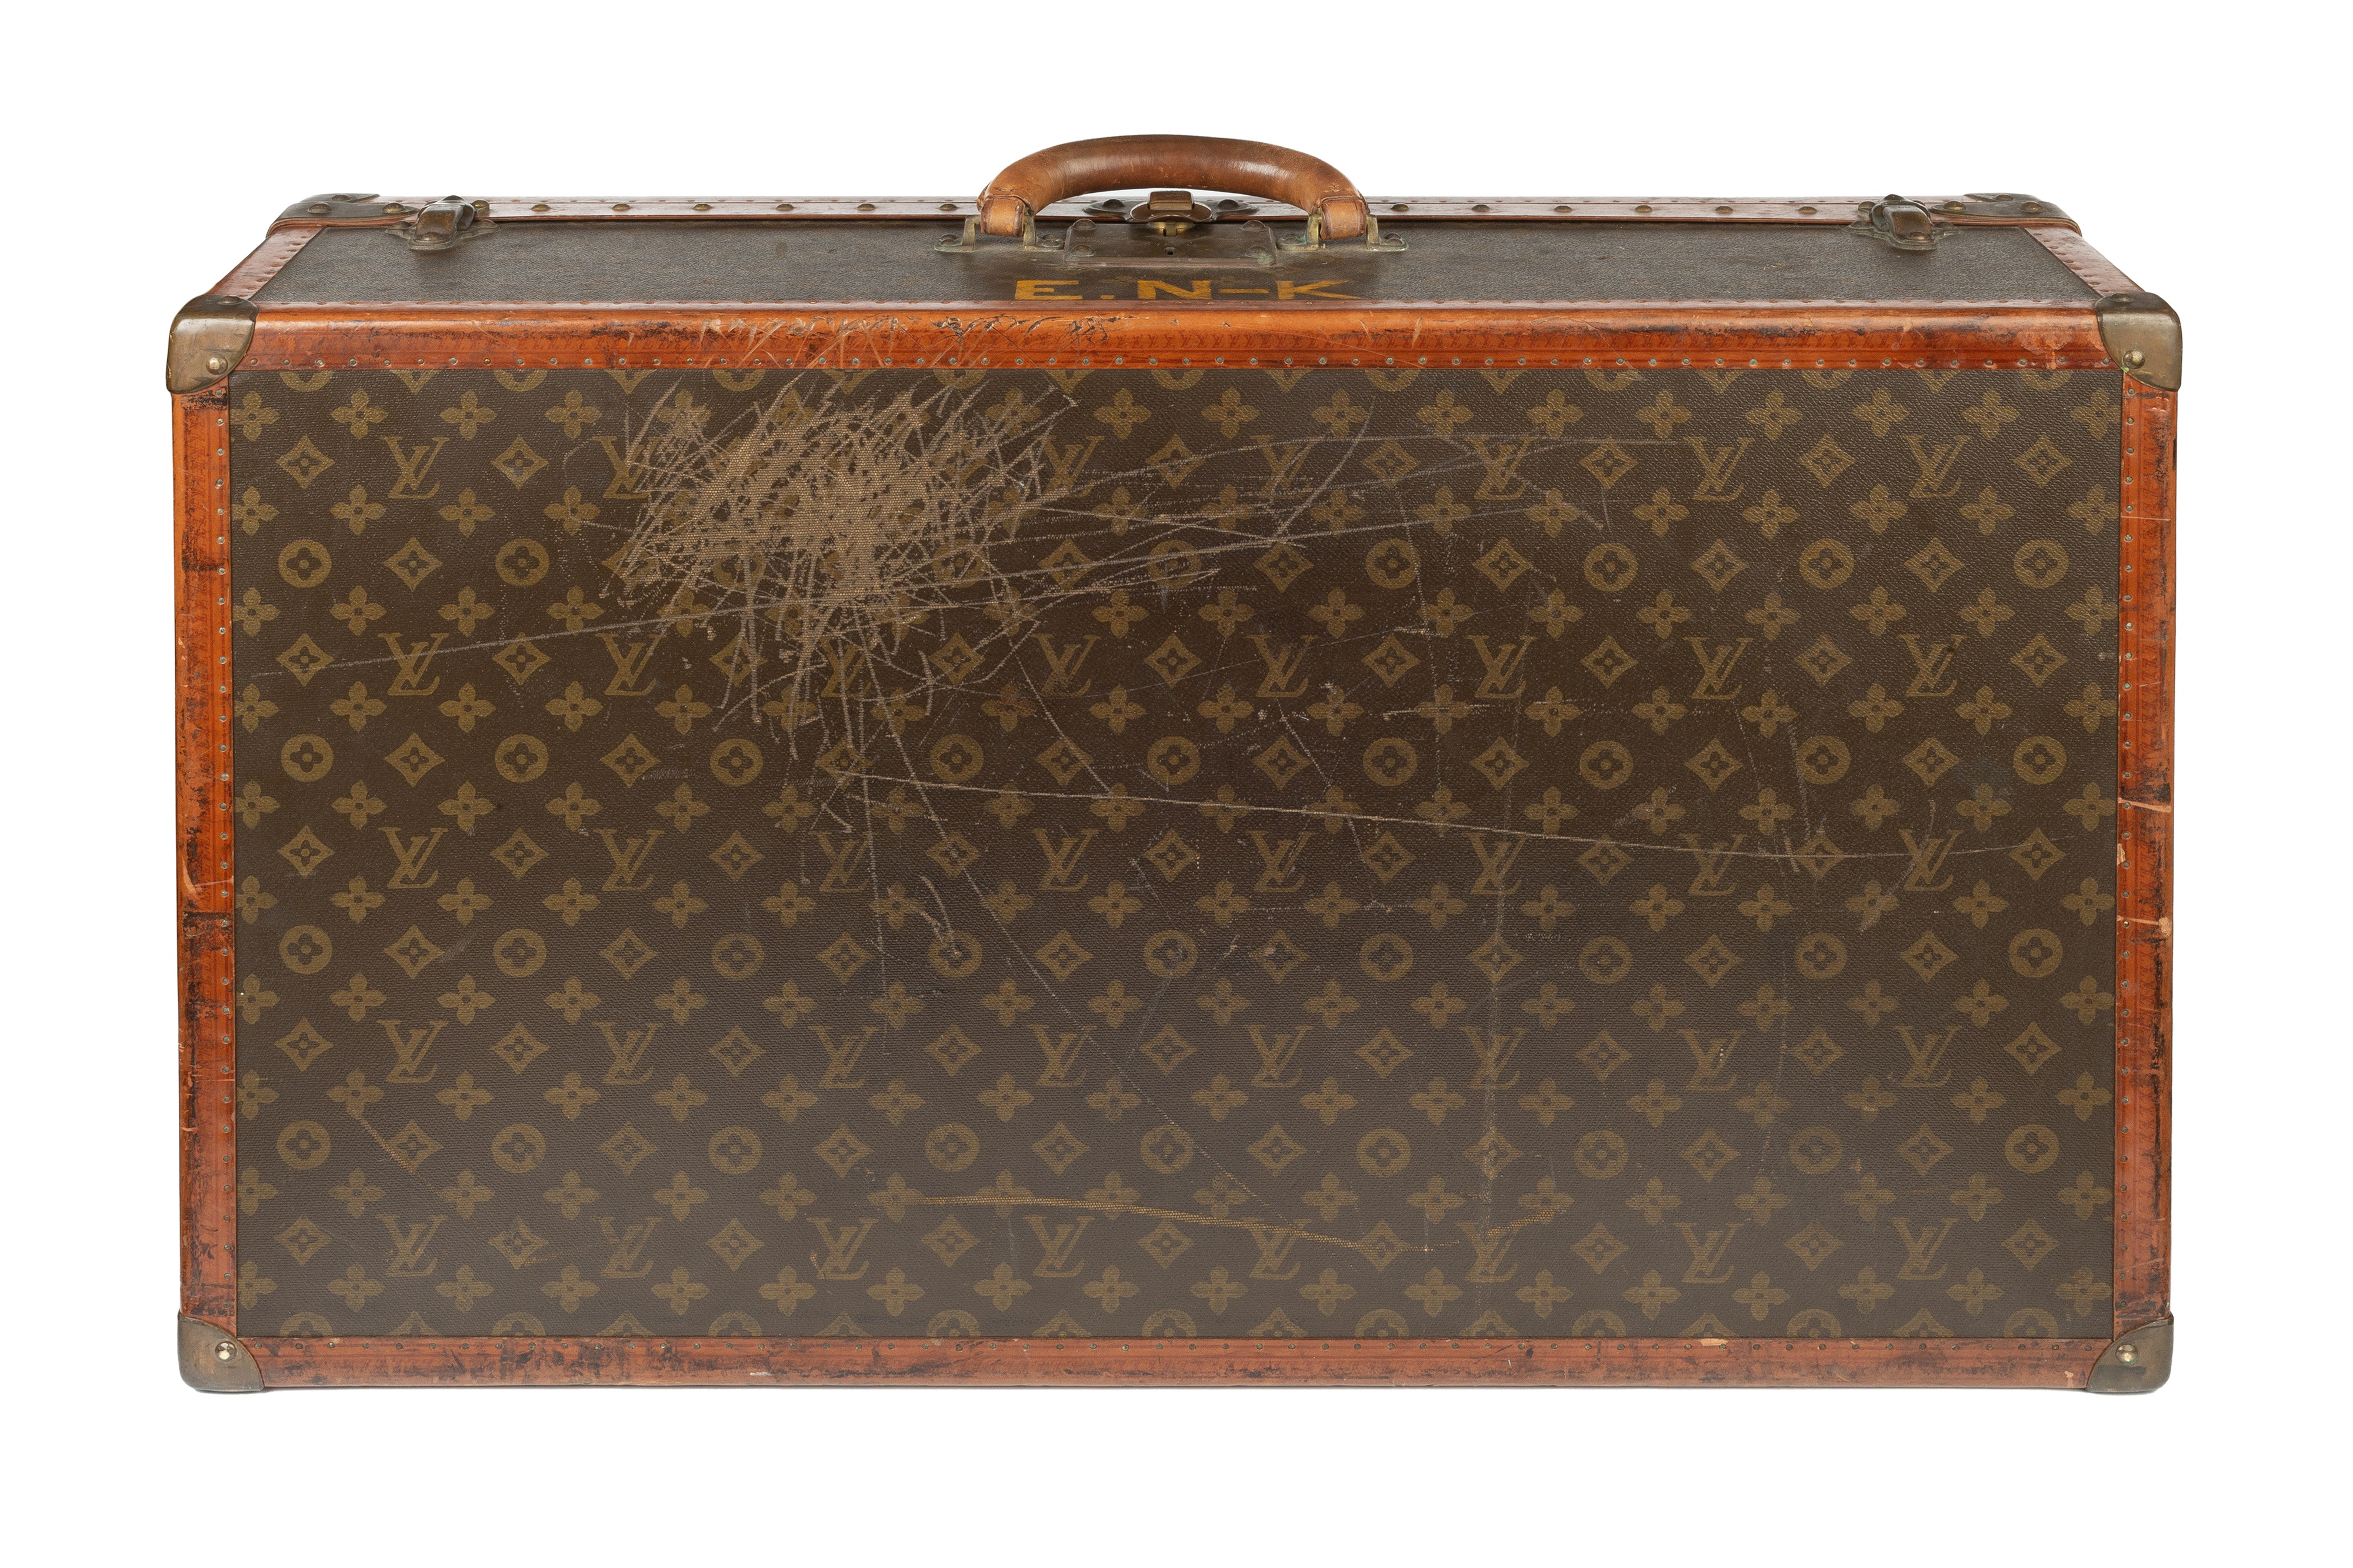 Sold at Auction: Louis Vuitton, Louis Vuitton LV Monogram Travel